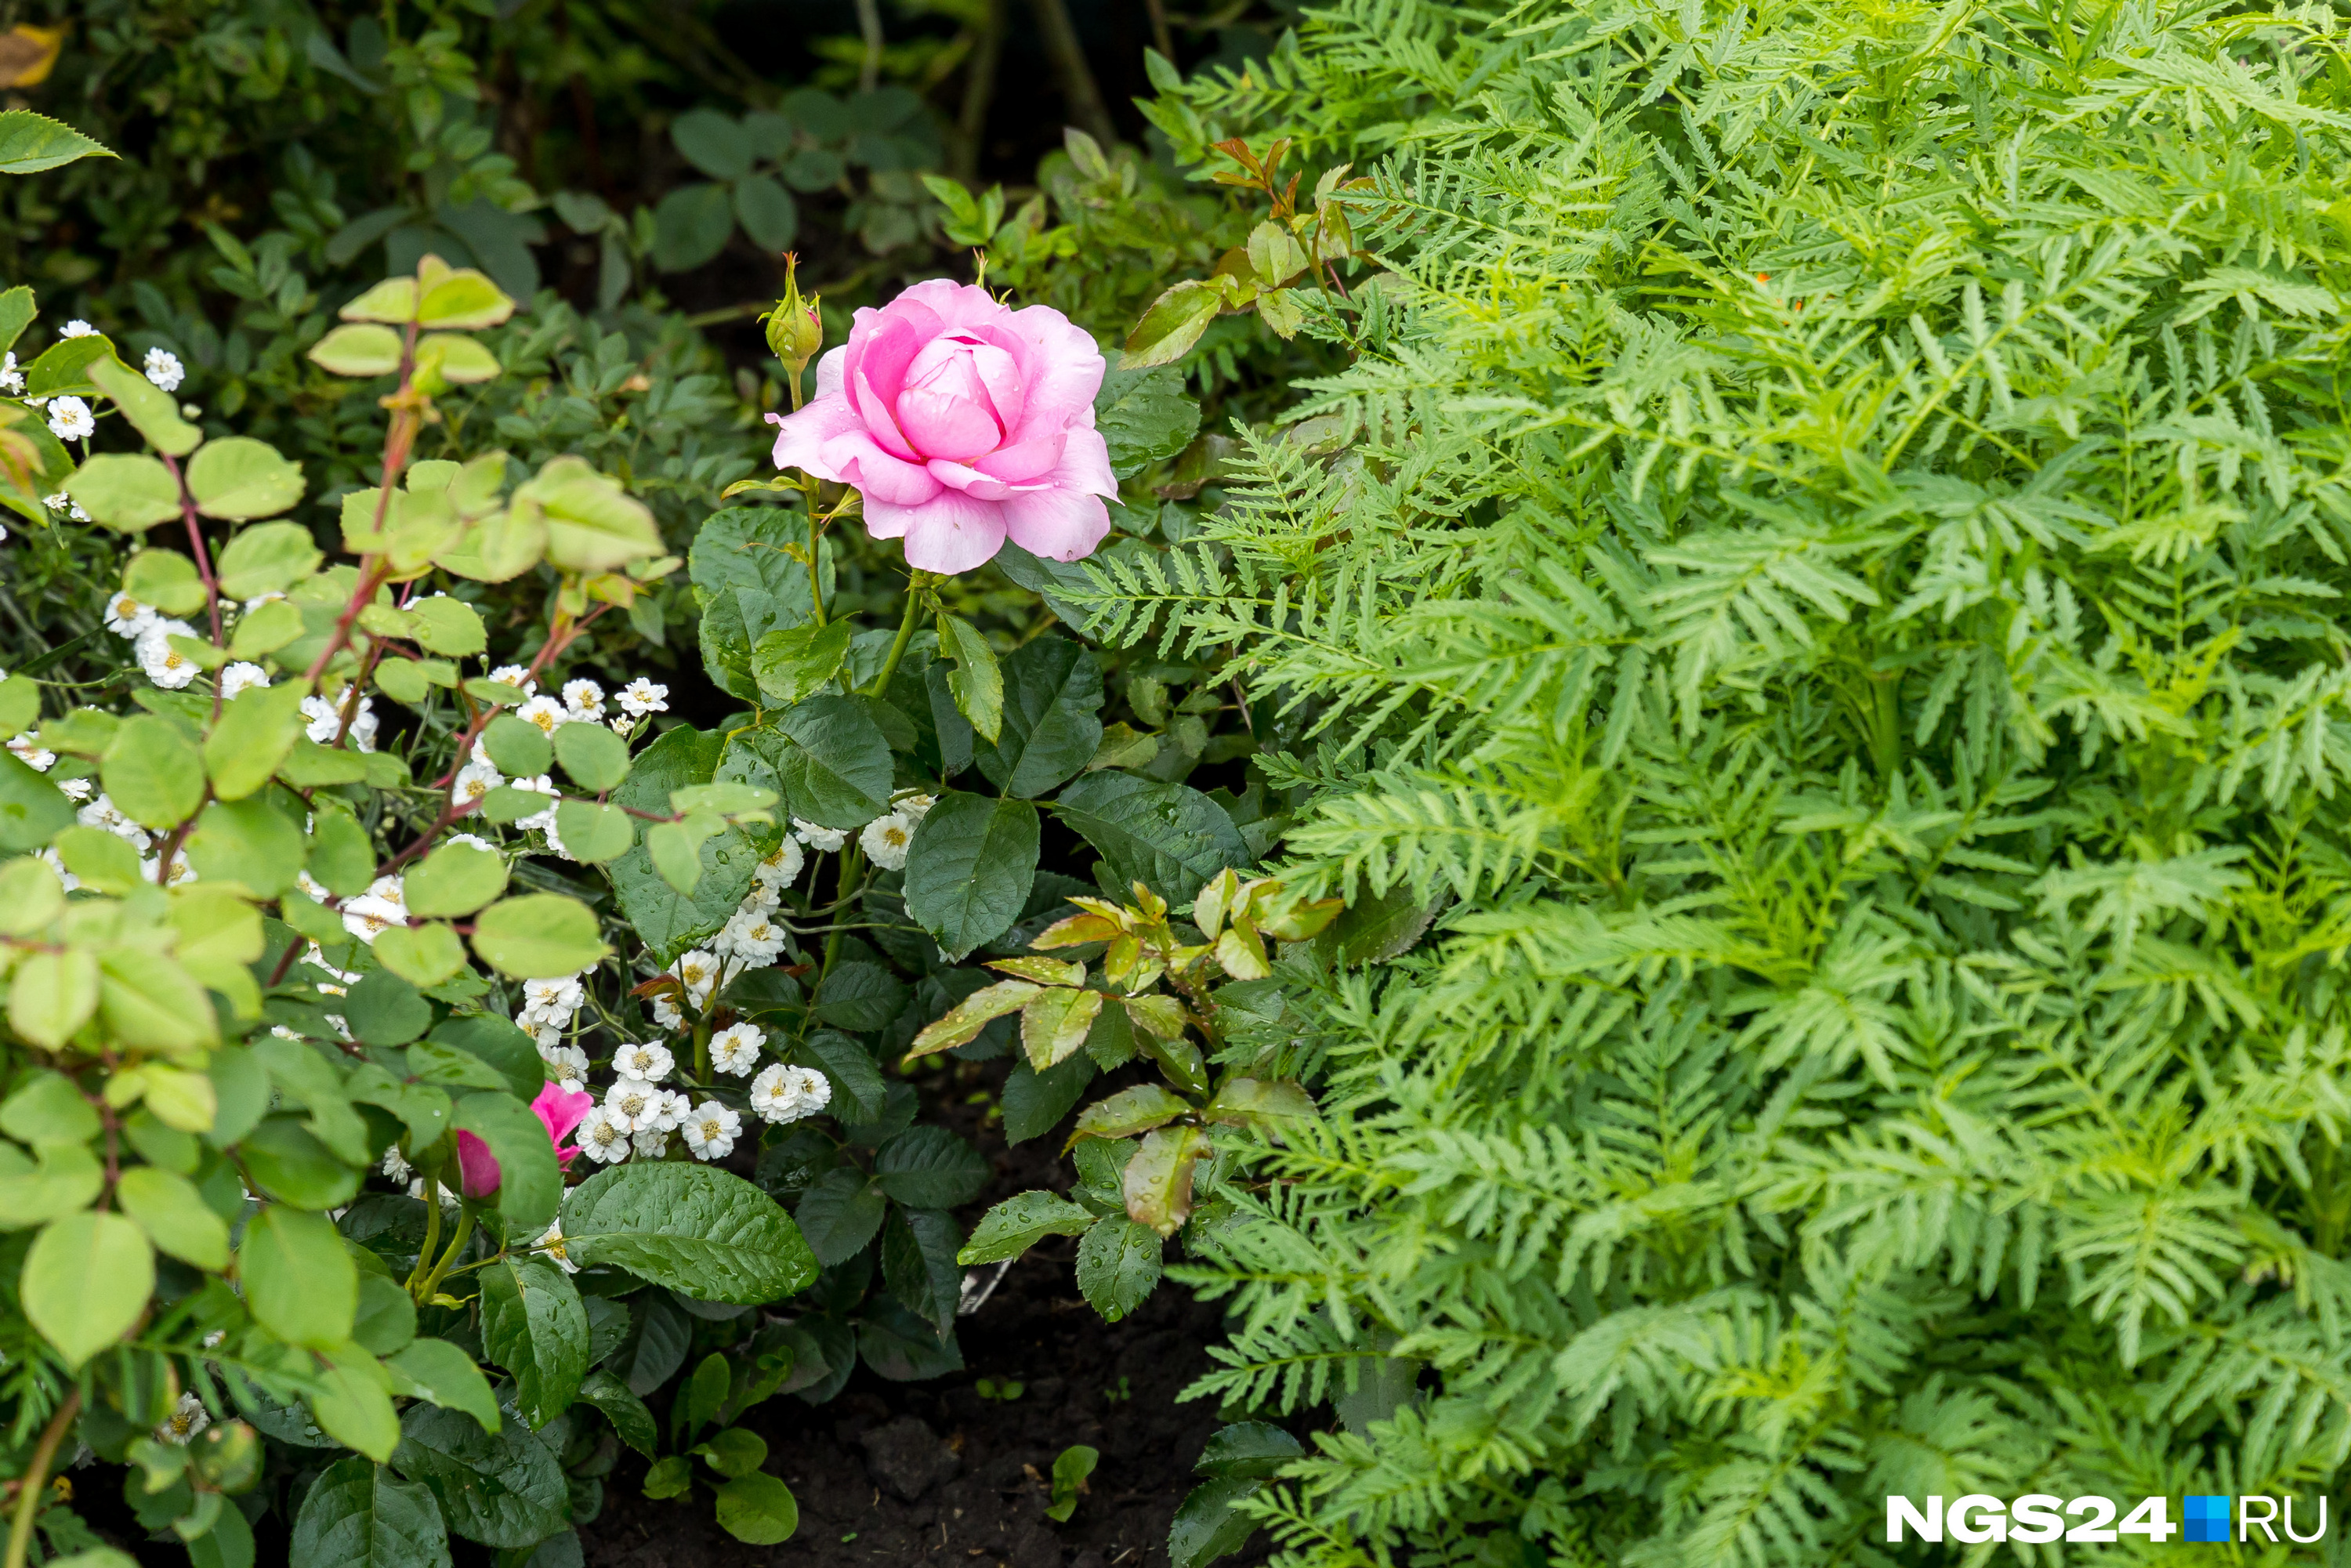 Пышные кусты бархатцев хорошо защитят молодые розы от неблагоприятных метеоусловий